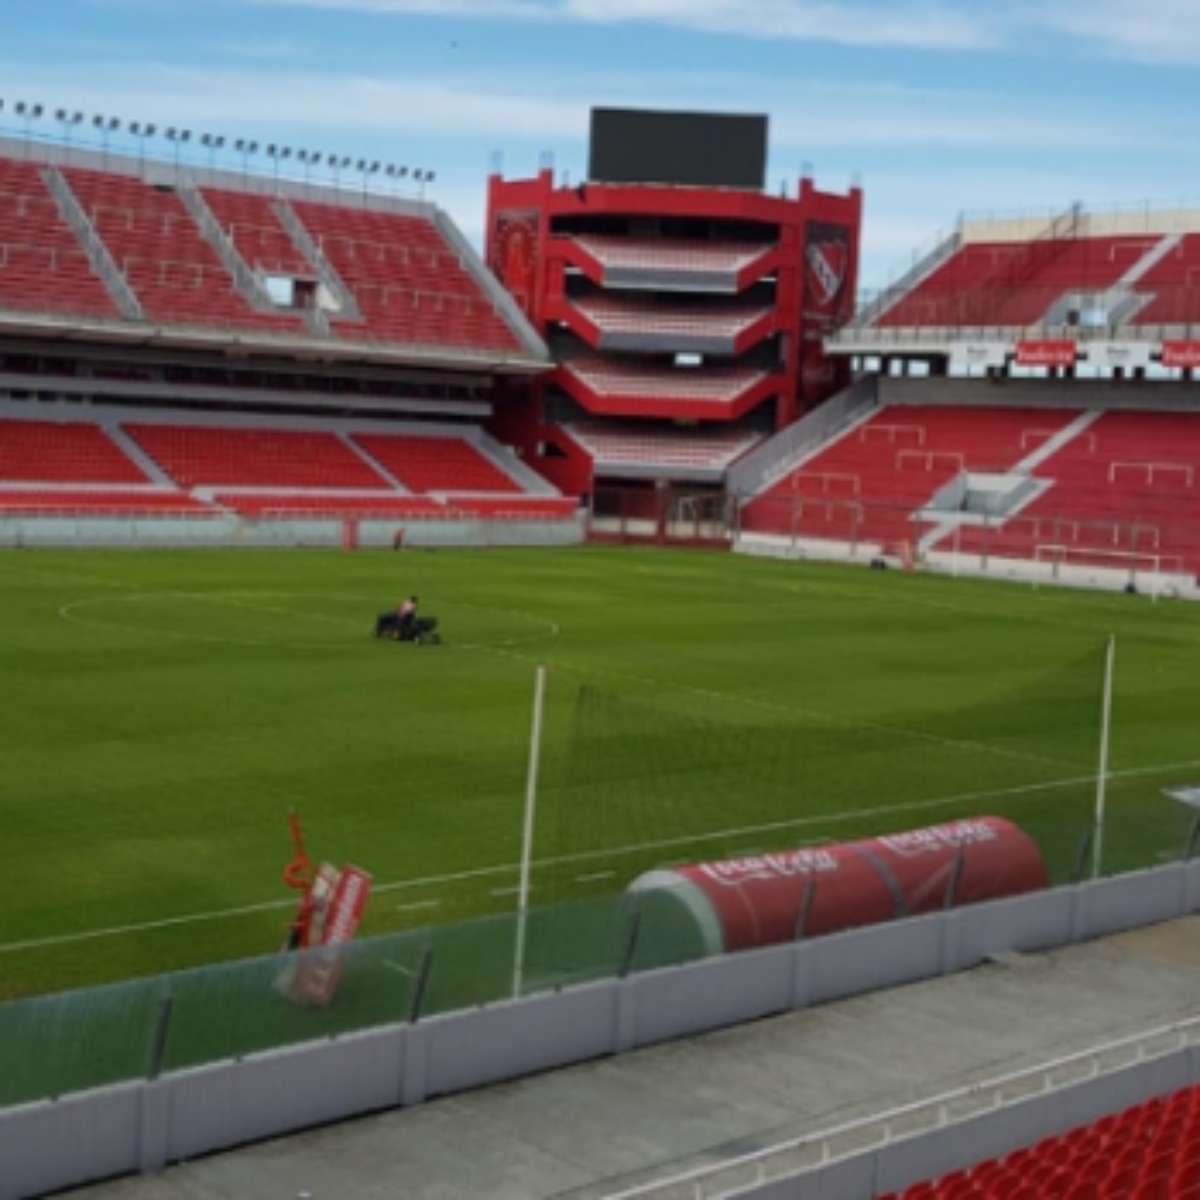 Estadio Libertadores de America - O que saber antes de ir